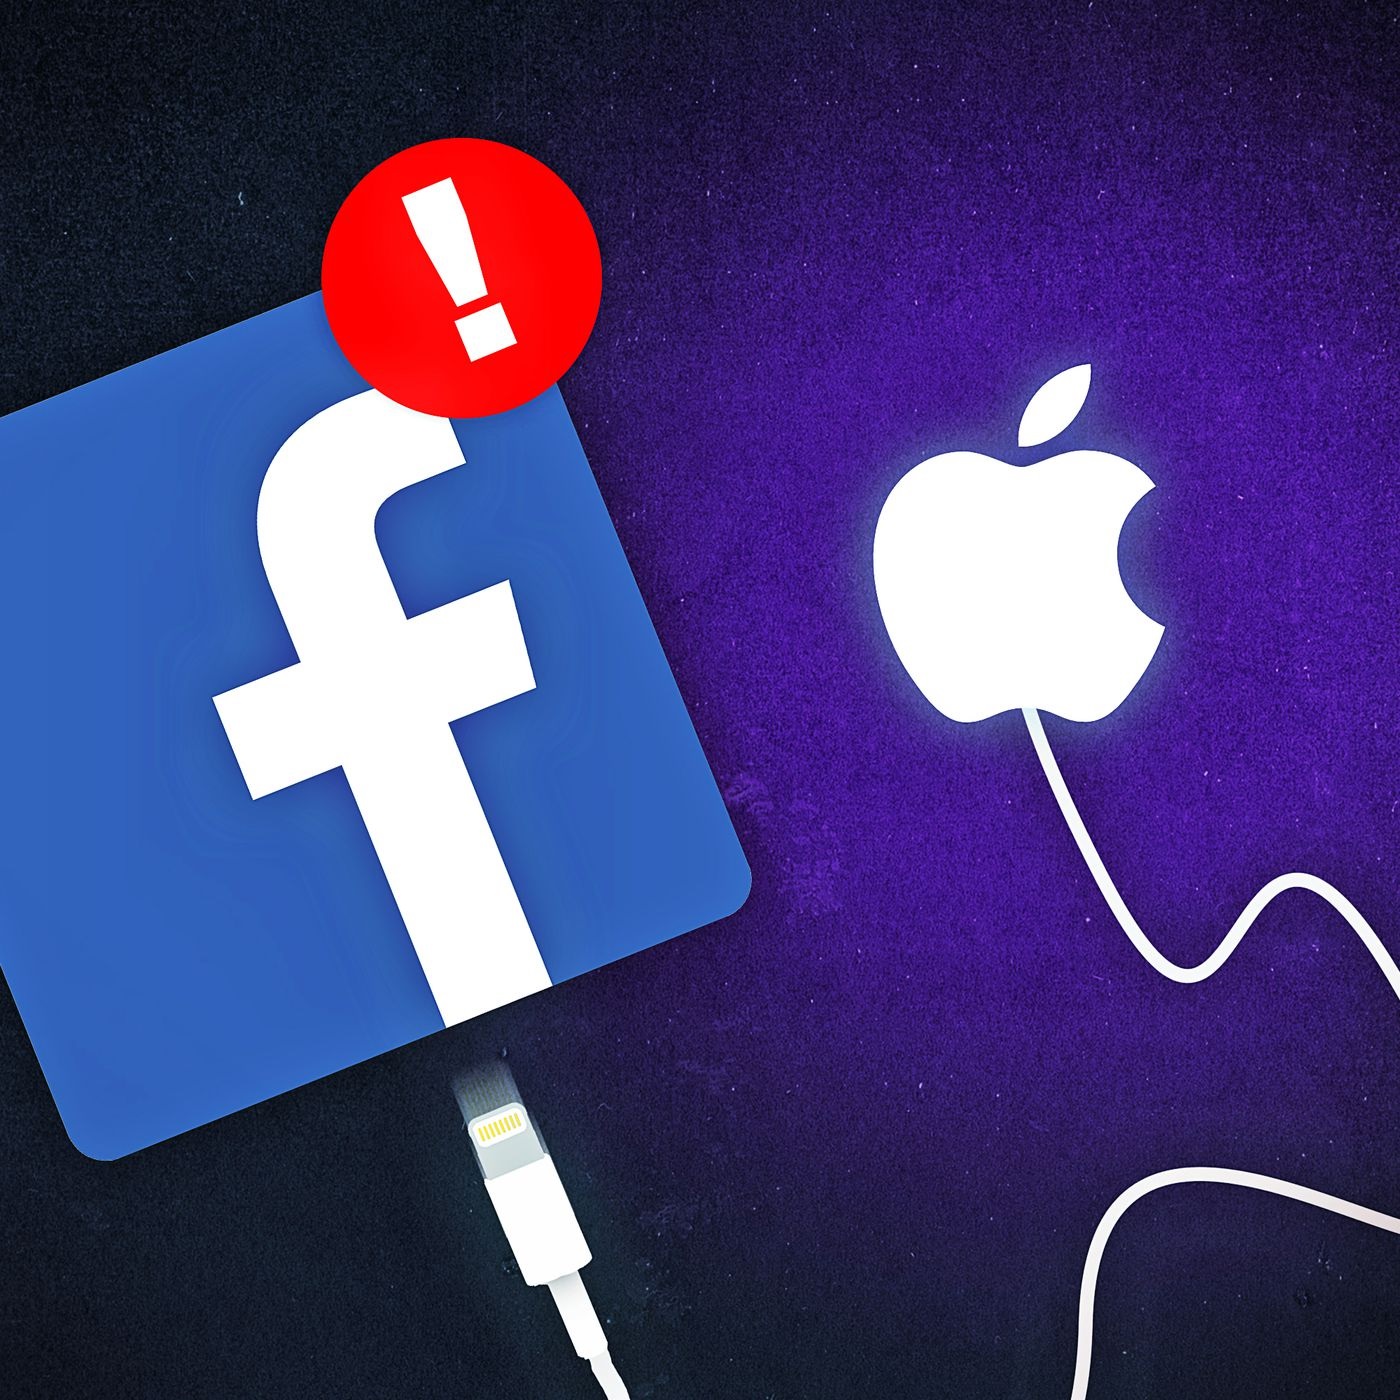 नये लेवल पर पहुंची एप्पल और फेसबुक की लड़ाई, फेसबुक ने हटाया एप्पल के पेज का वेरिफिकेशन